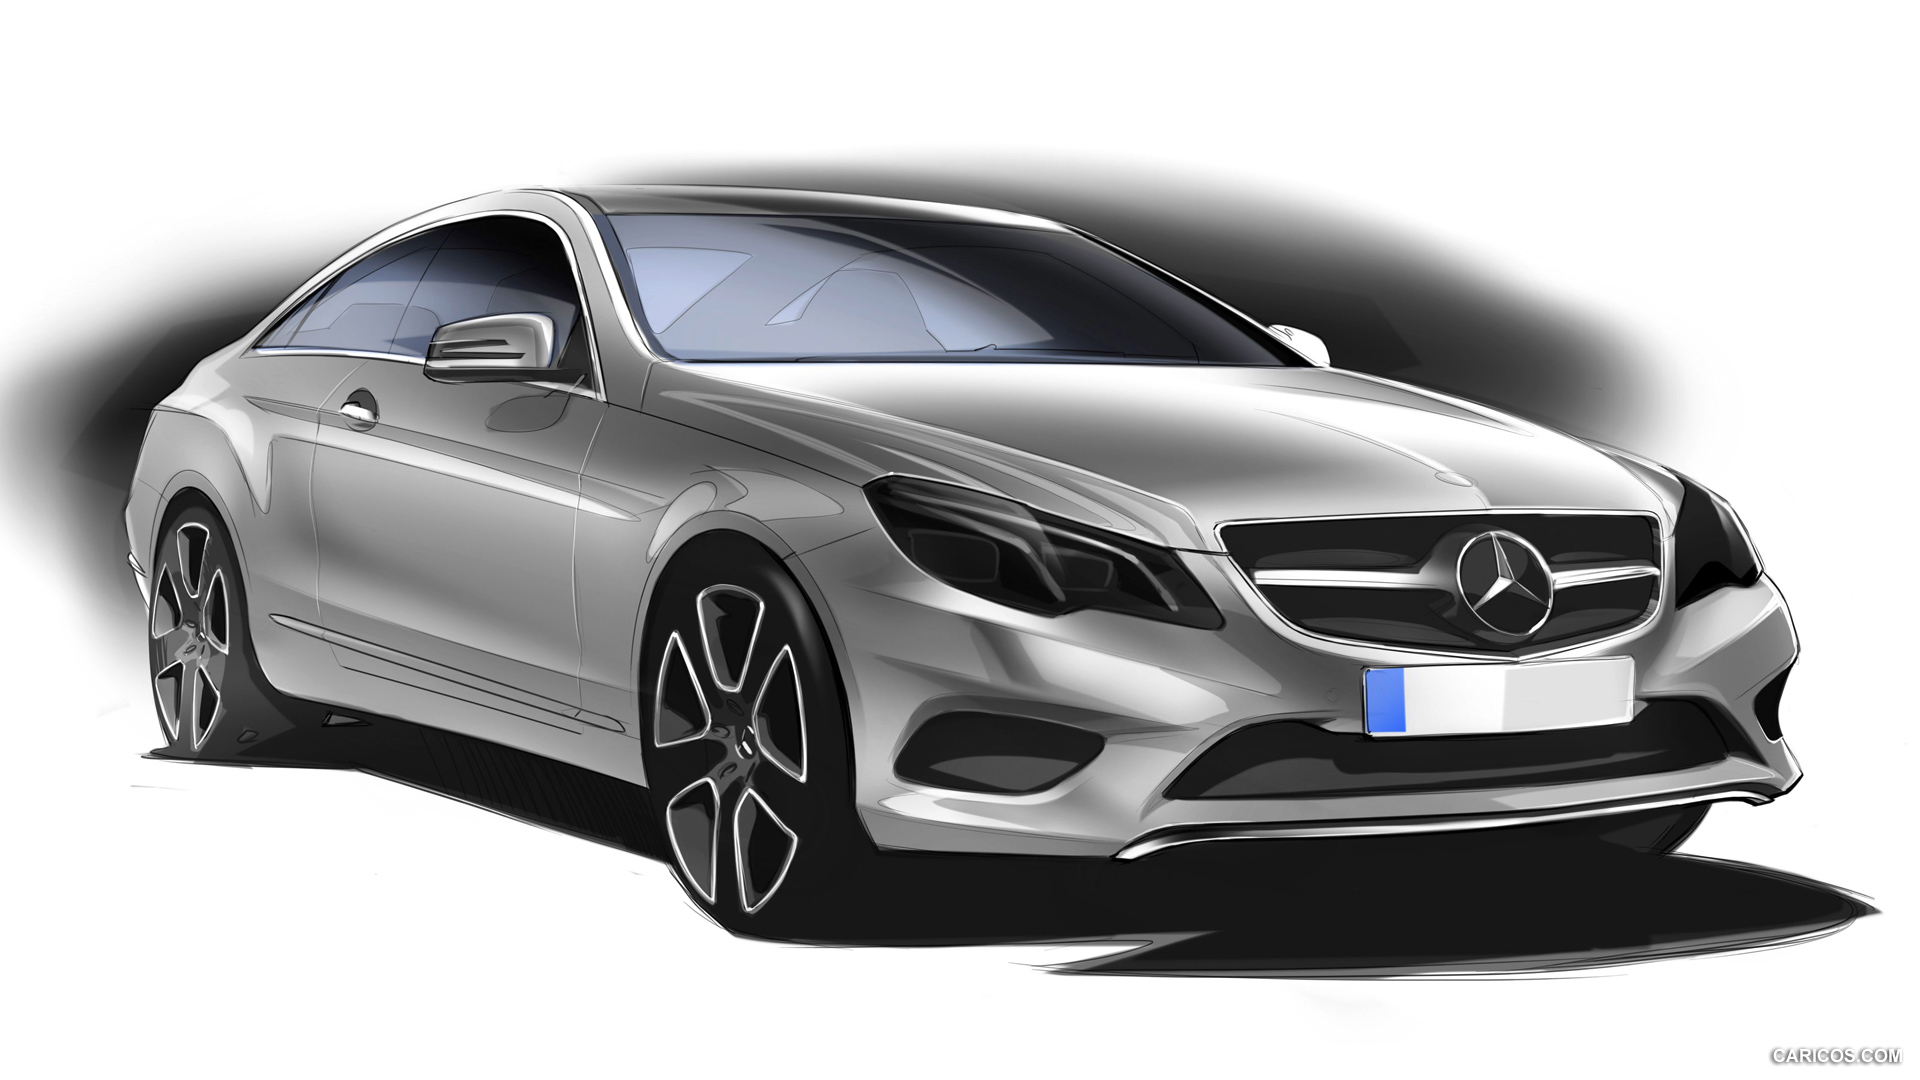 2014 Mercedes-Benz E-Class Coupe  - Design Sketch, #60 of 78